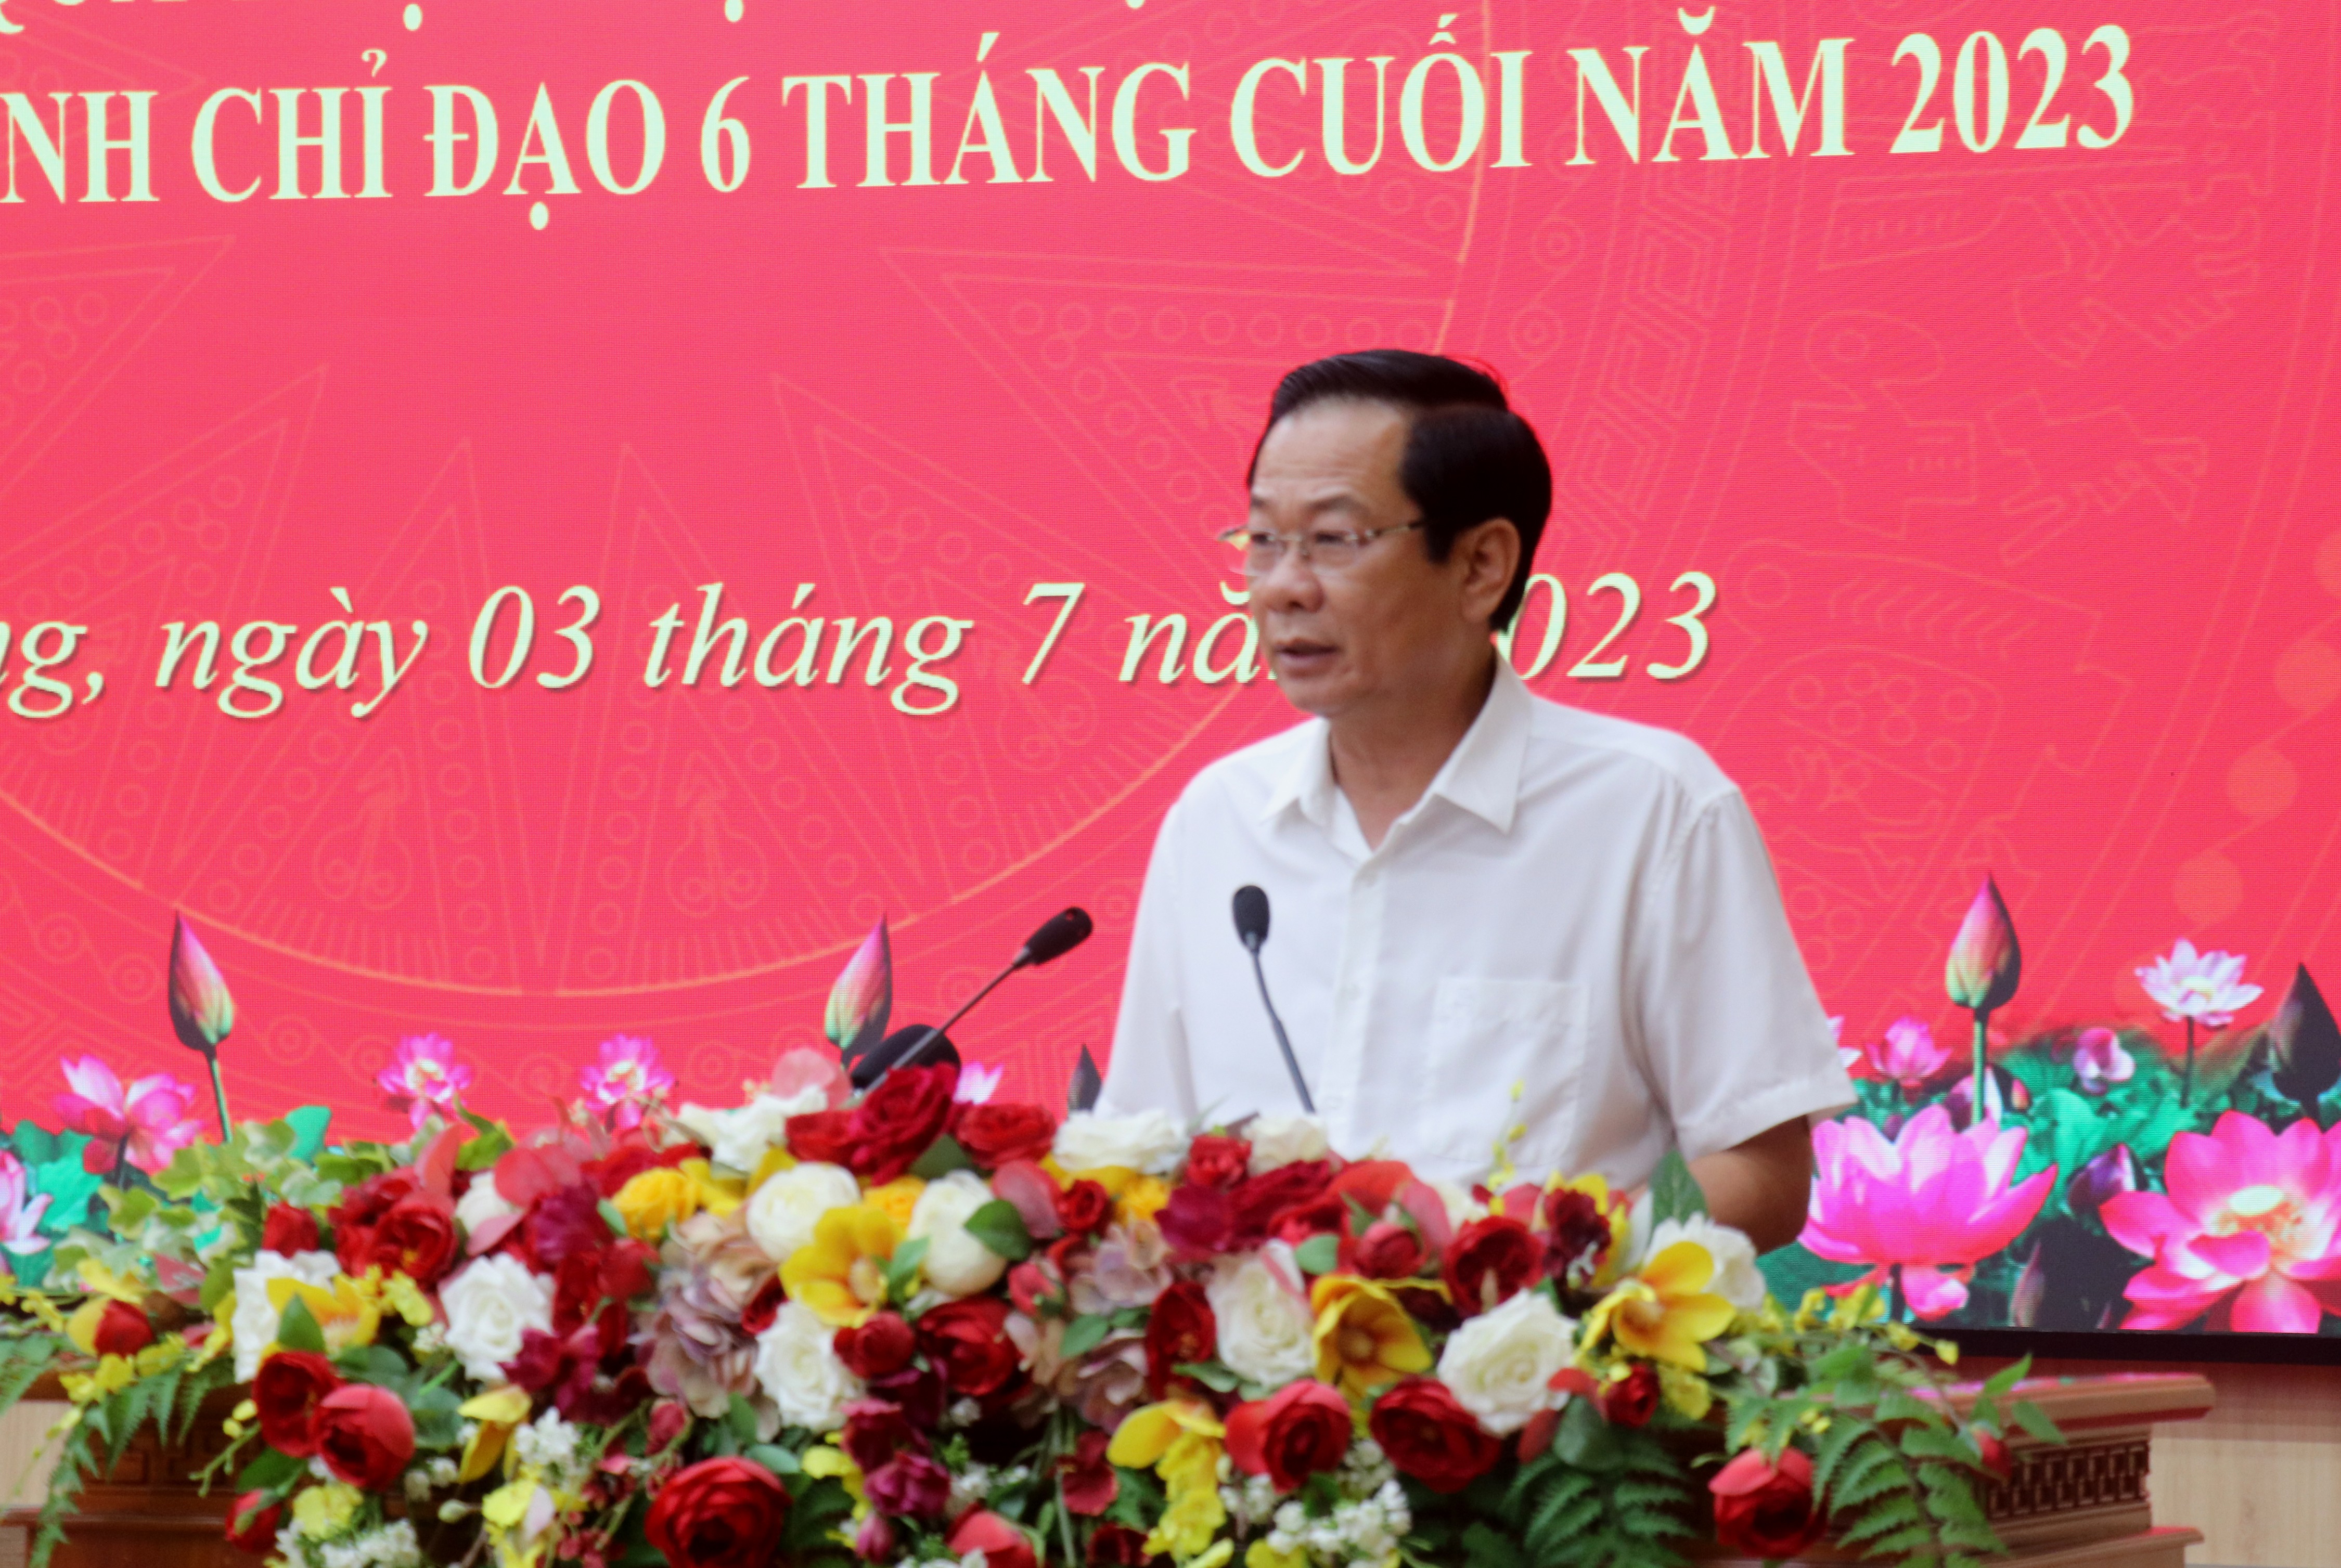 Sự kiện - Kinh tế tỉnh Kiên Giang đứng thứ 5 khu vực đồng bằng sông Cửu Long